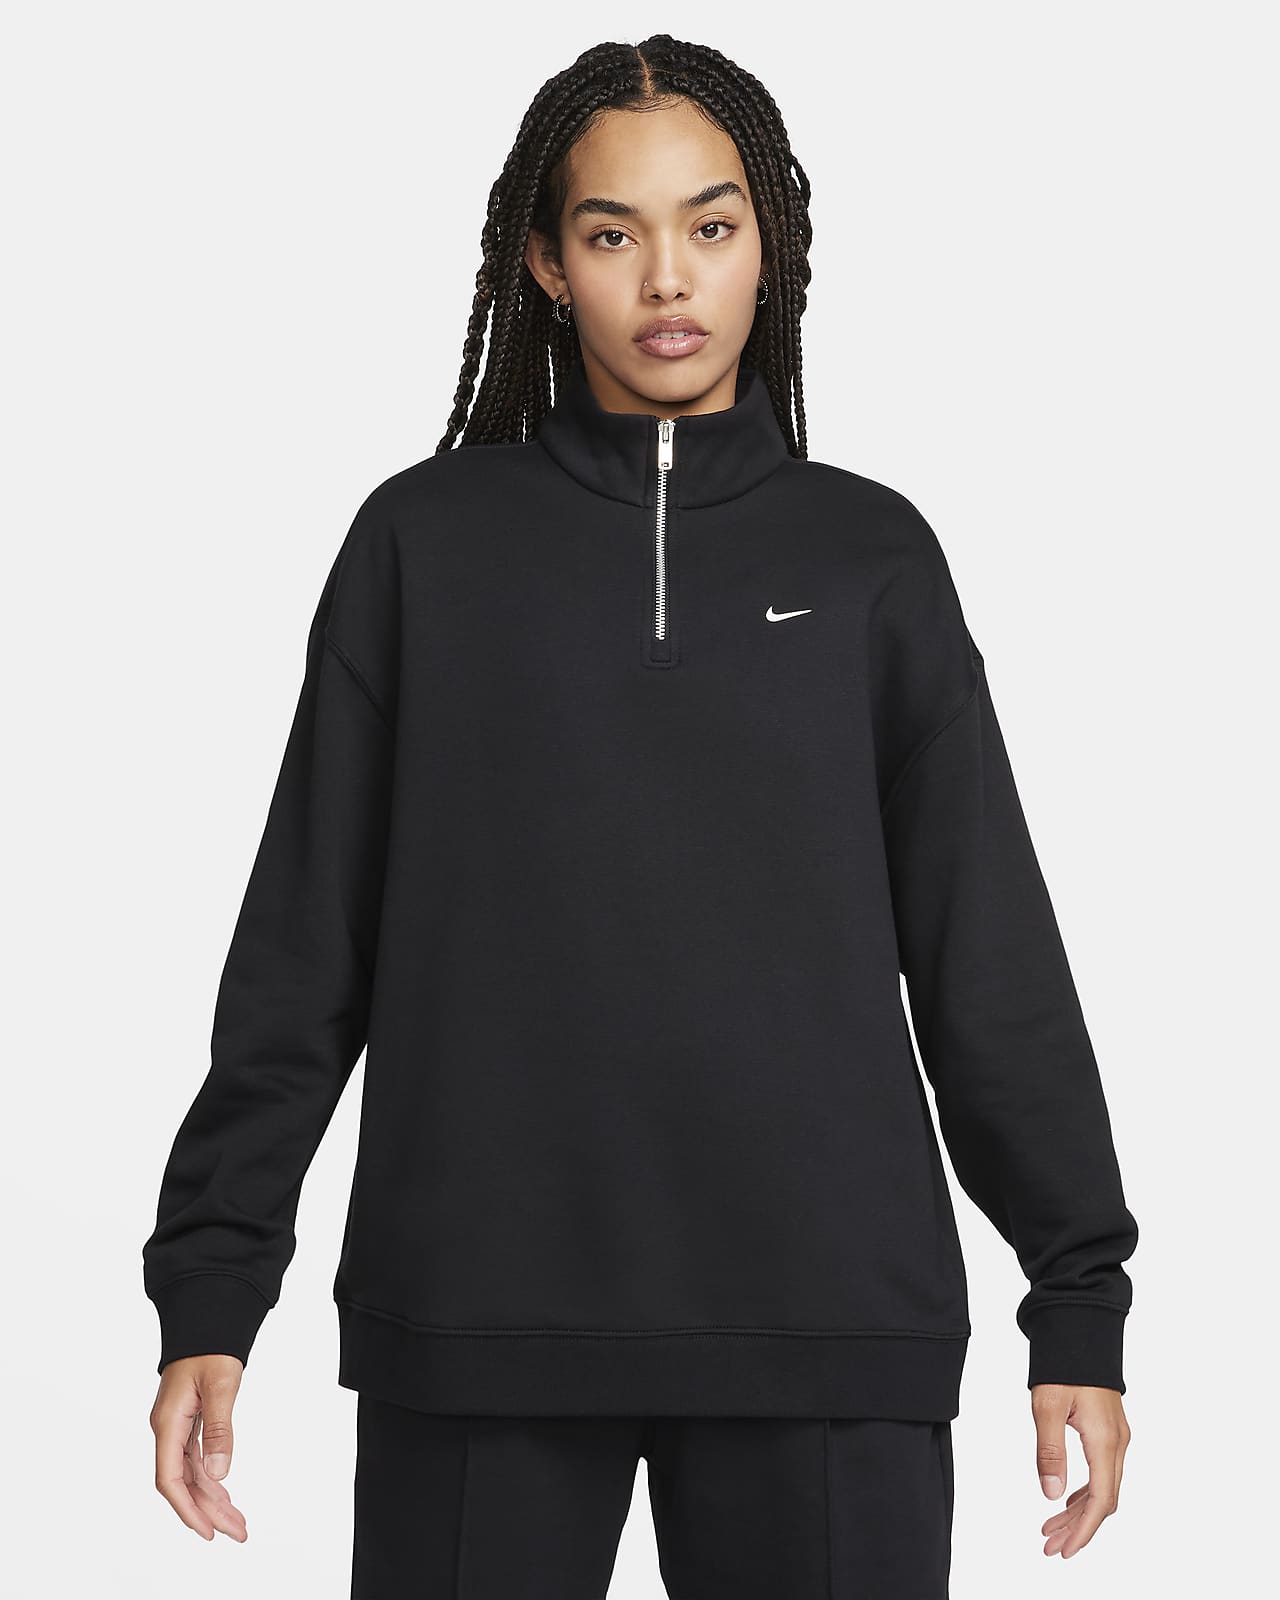 Nike Sportswear Women's Oversized 1/4-Zip Fleece Top. Nike LU